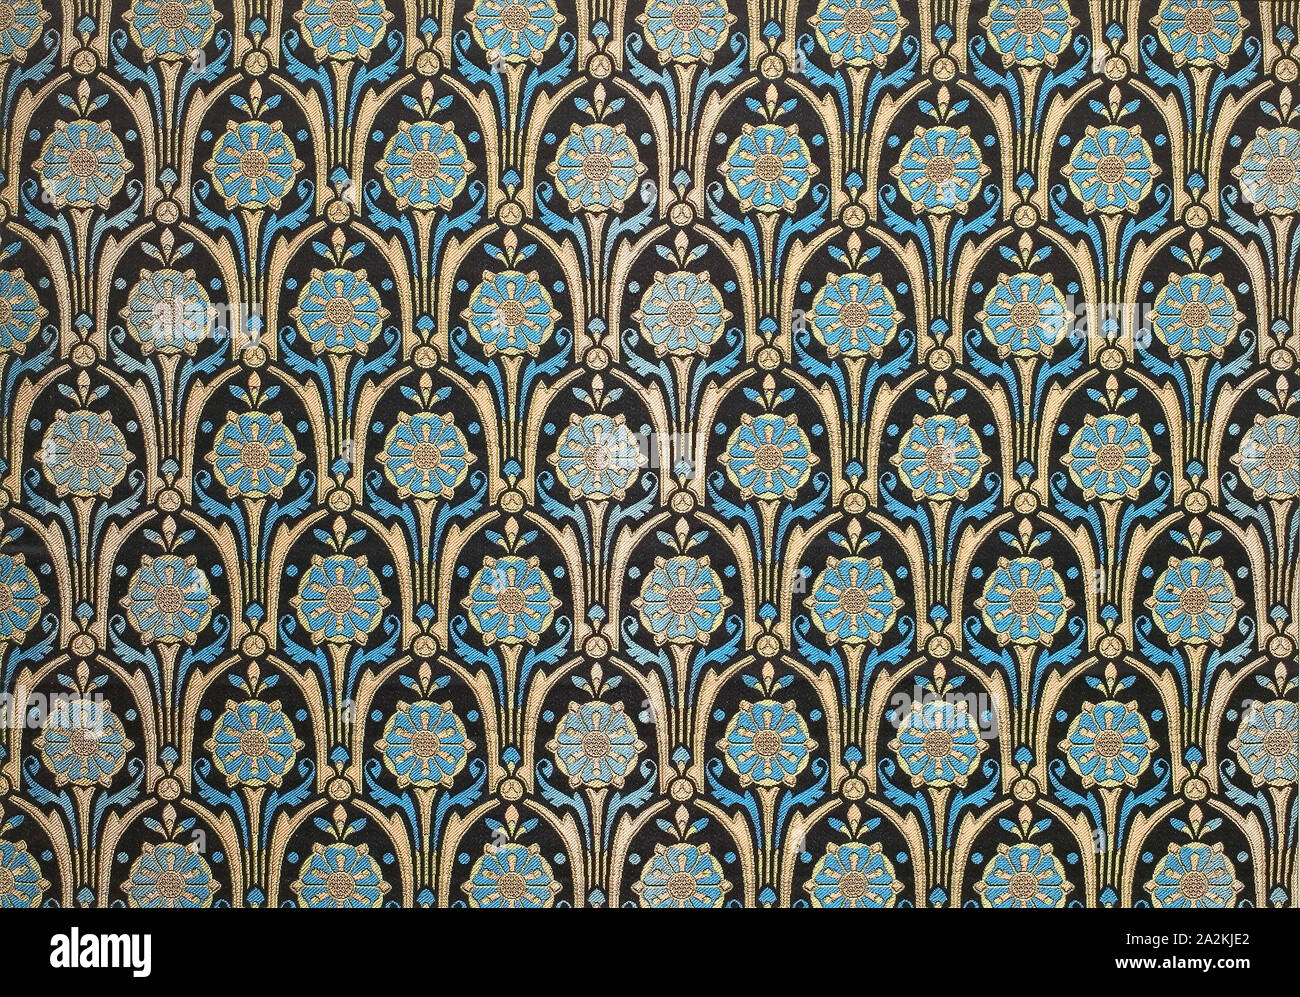 Sutherland, 1870/71, conçu par Owen Jones (anglais, 1809-1874), produit par Warner, Sillett et Ramm, Londres, Spitalfields, soie, satin twill weave avec entrelacs de liaison secondaire warps et trames de motifs supplémentaires, 39,0 x 53,7 cm (15 1/4 x 21 1/8 in Banque D'Images